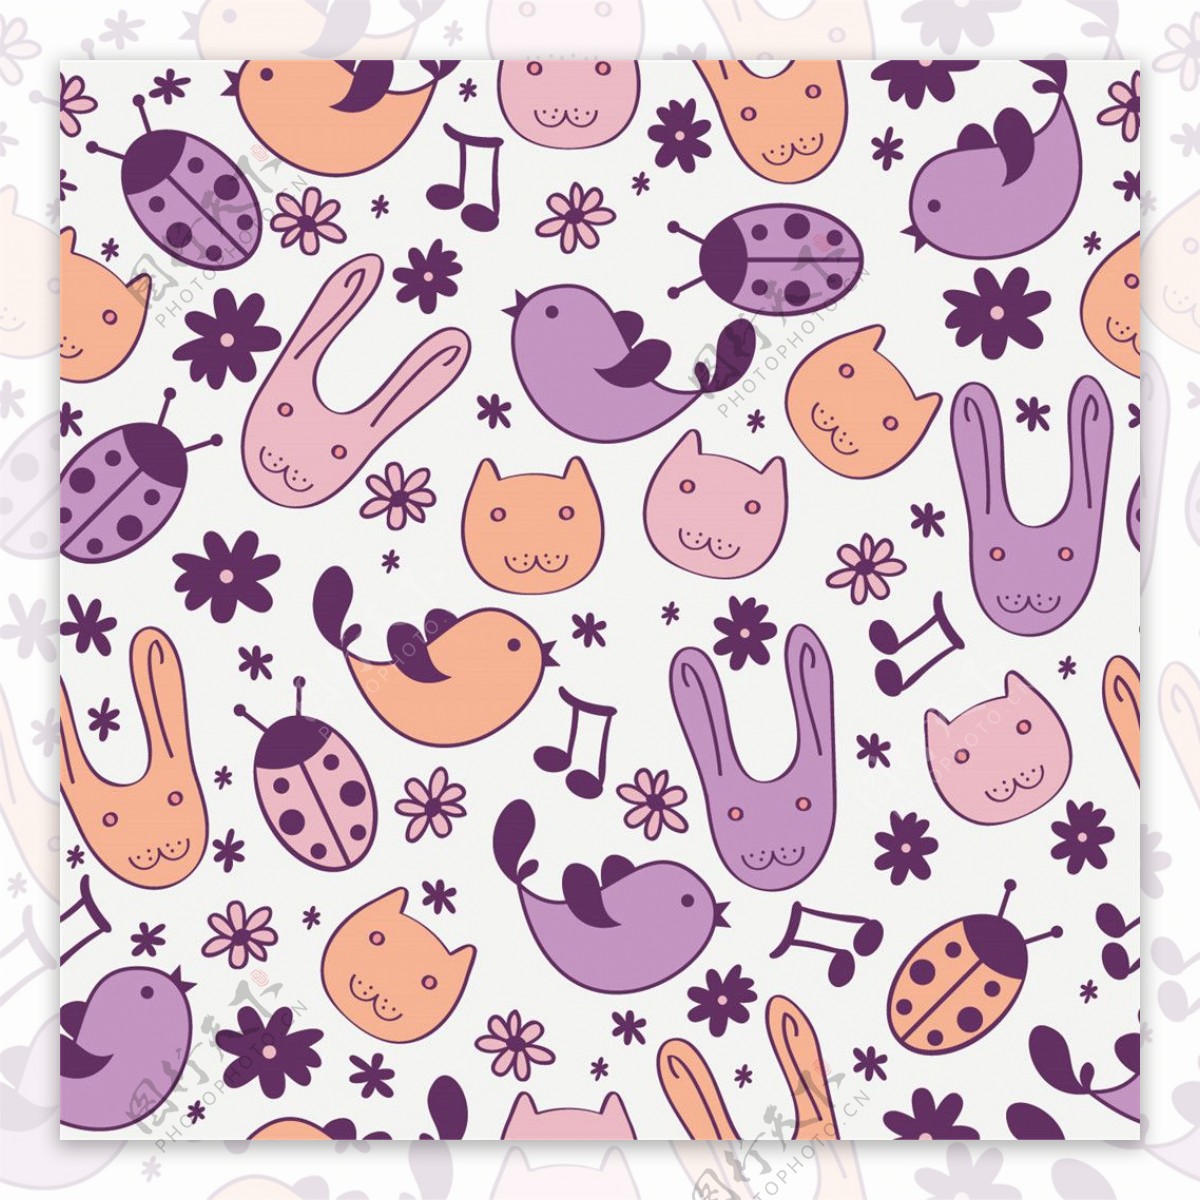 清新手绘紫色调动物壁纸图案装饰设计